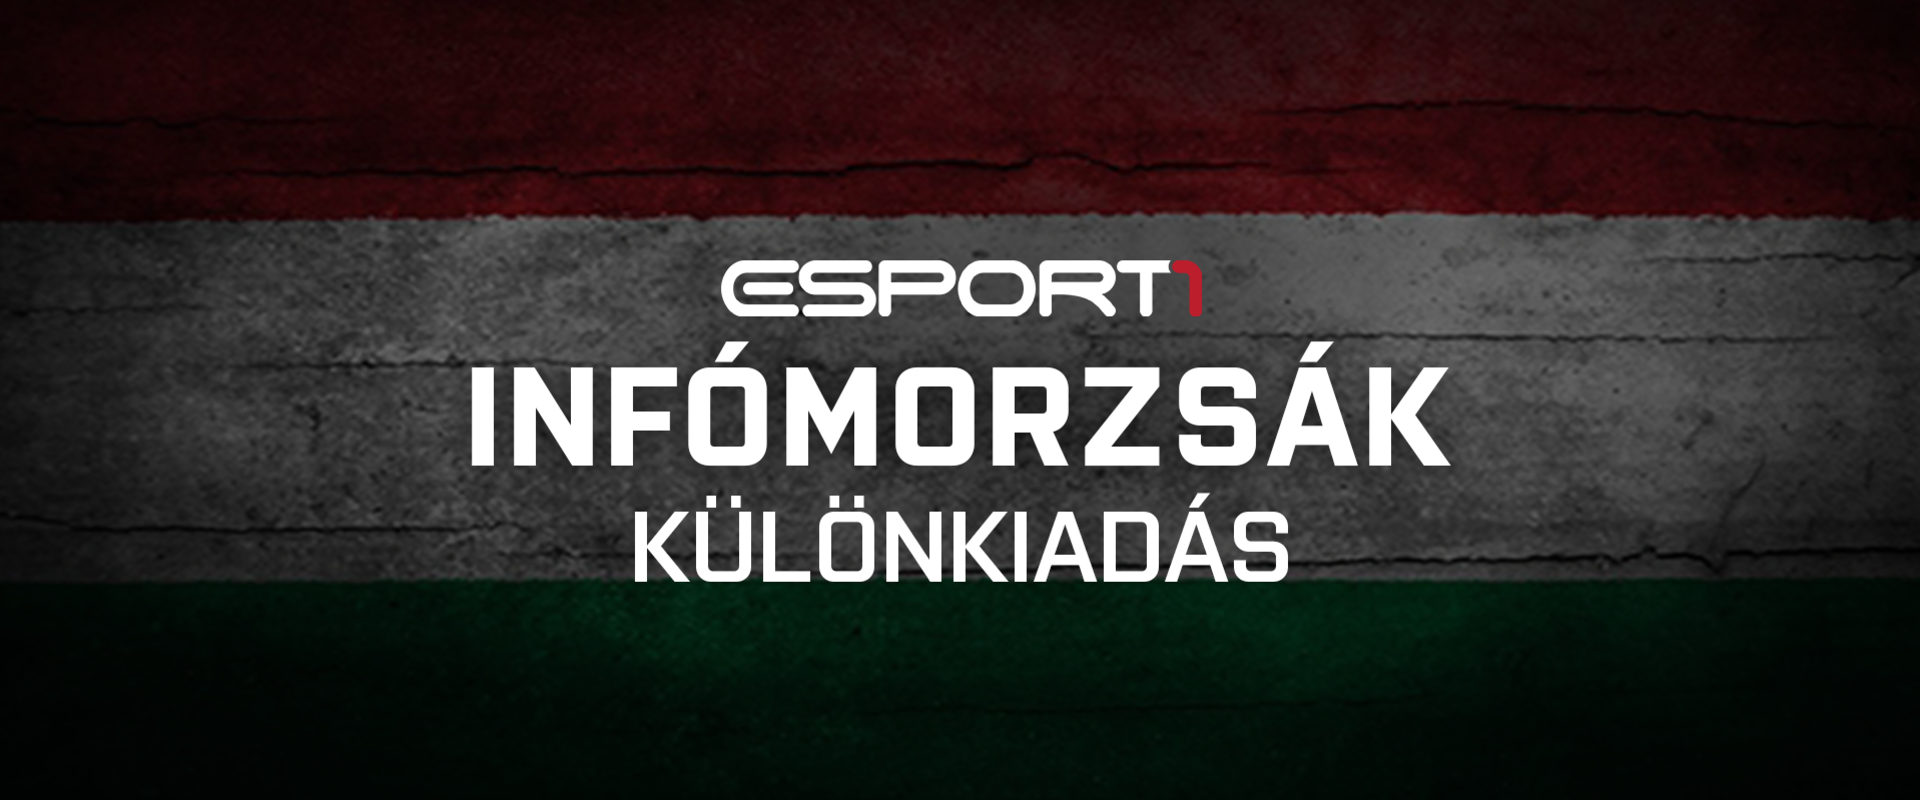 Infomorzsák különkiadás - A legjobb magyar e-sport játékosok